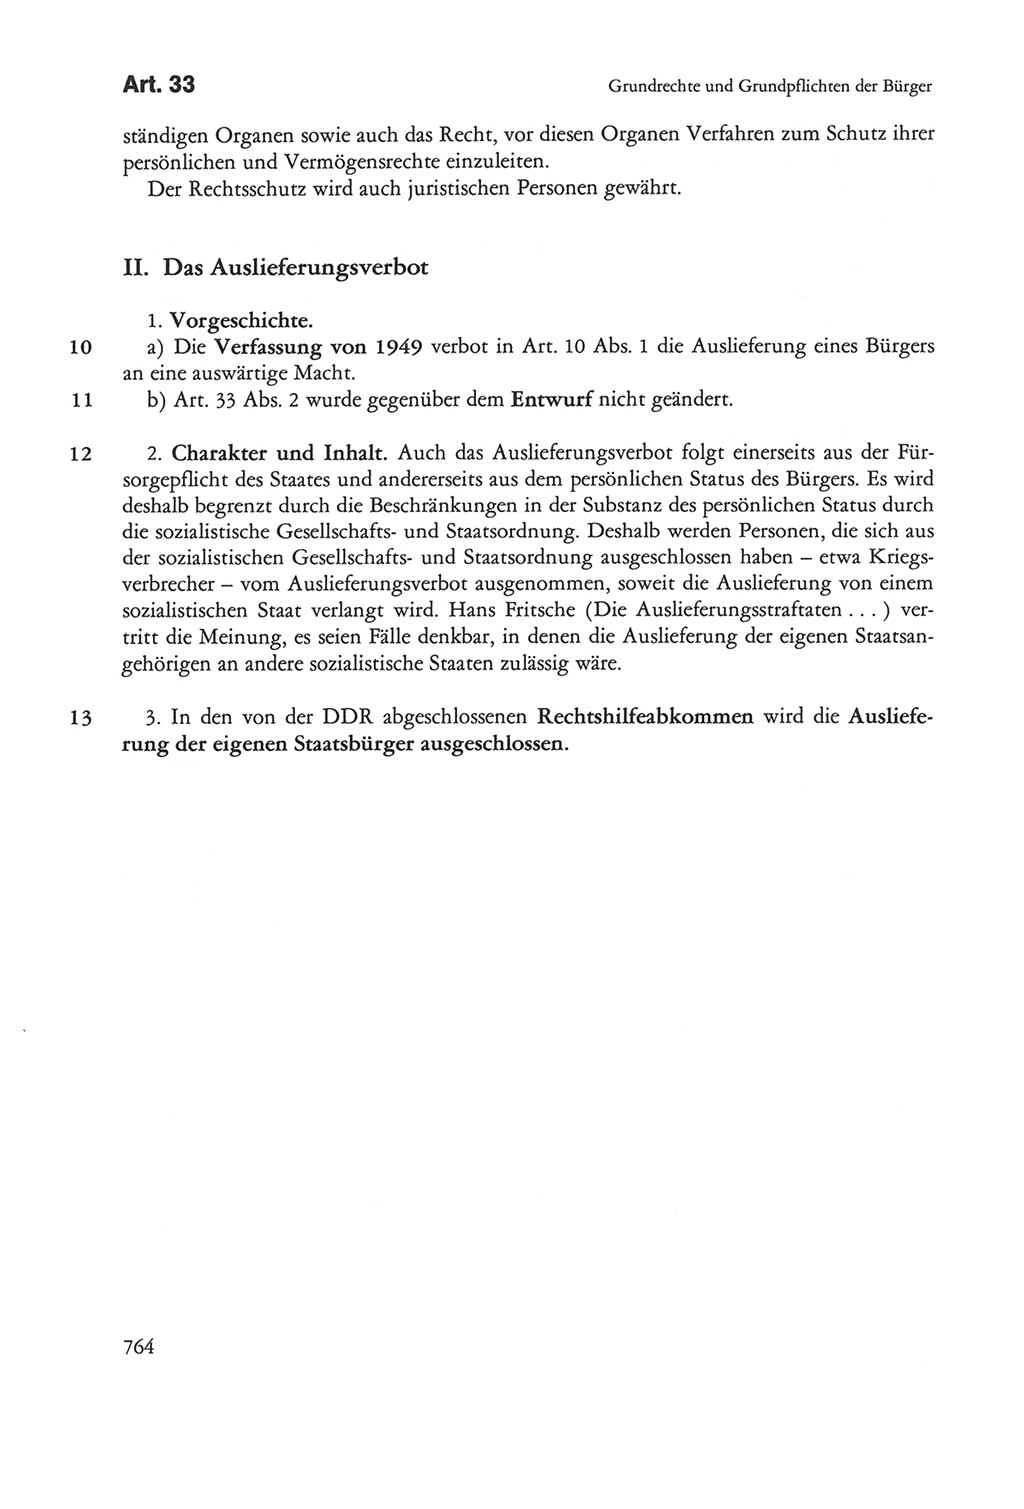 Die sozialistische Verfassung der Deutschen Demokratischen Republik (DDR), Kommentar 1982, Seite 764 (Soz. Verf. DDR Komm. 1982, S. 764)